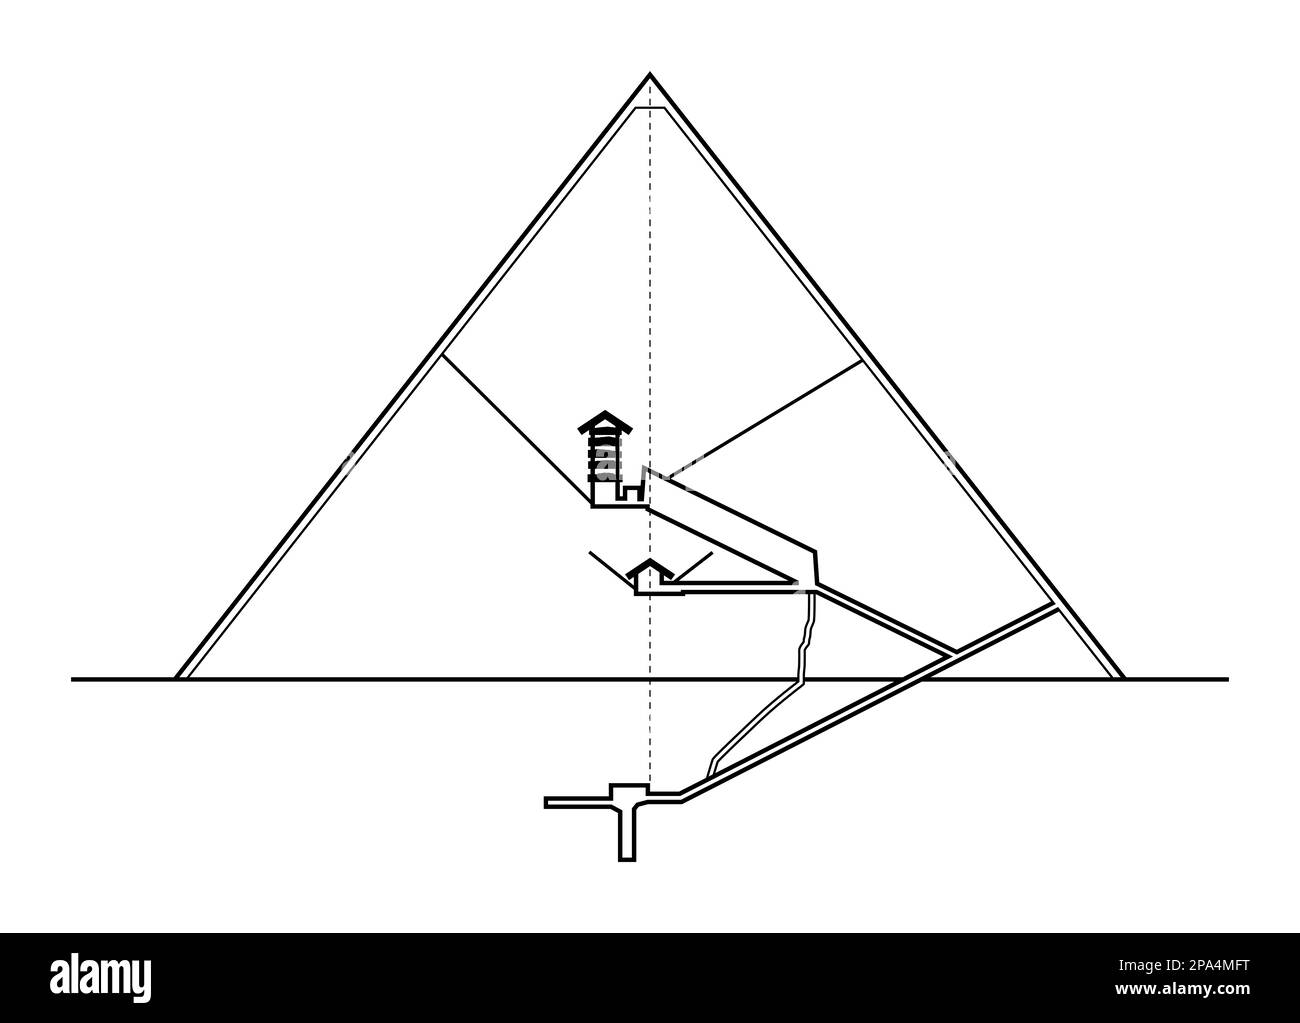 Grande Pyramide de Gizeh, section verticale, vue de l'est. Schéma d'élévation des structures intérieures de la plus grande pyramide d'Égypte. Banque D'Images